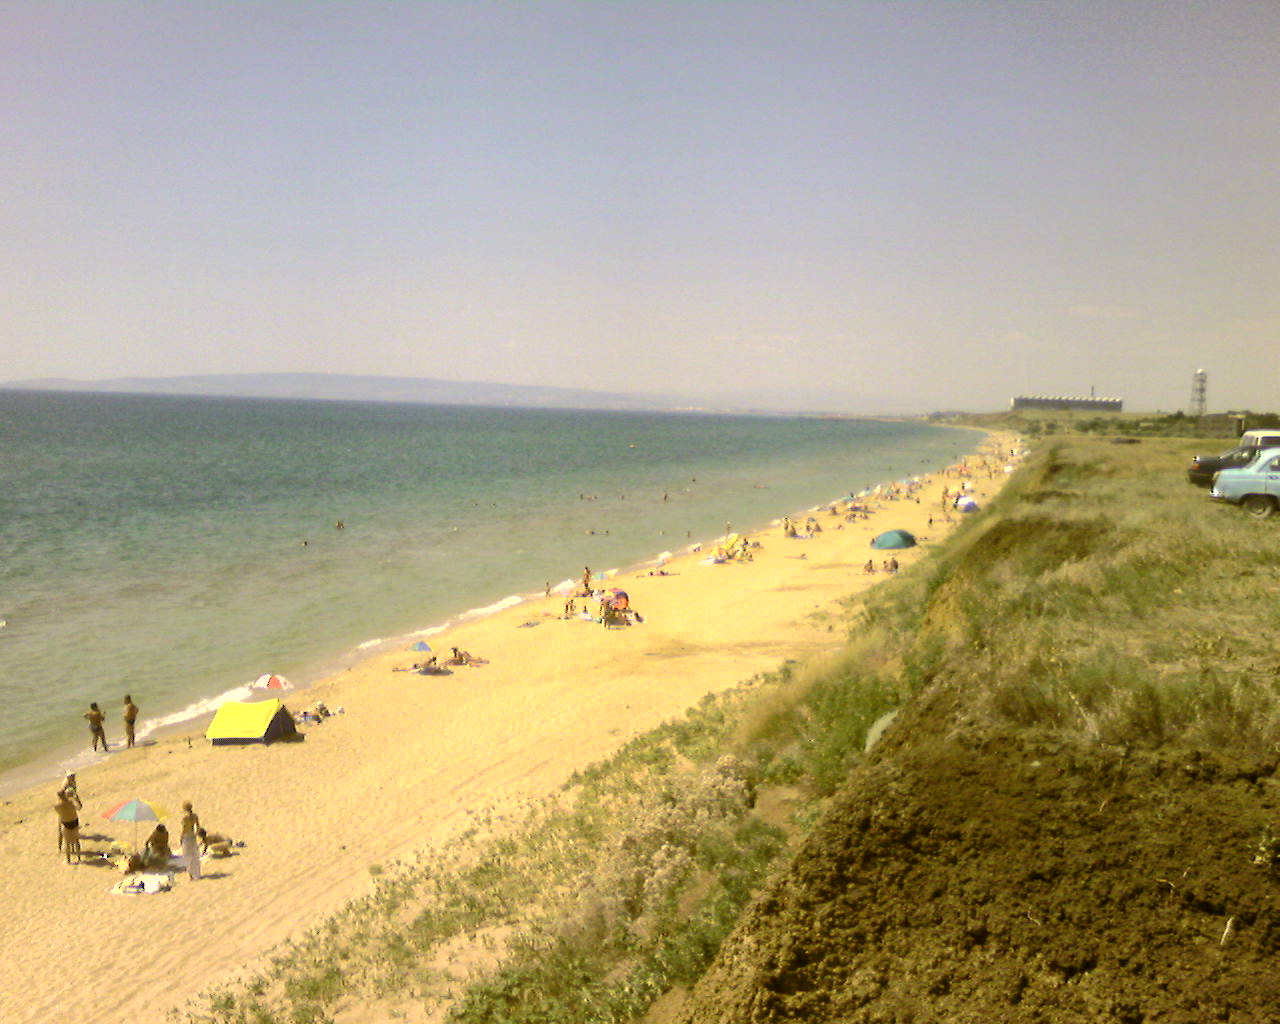 Fotografija Plazh Oazis priljubljeno mesto med poznavalci sprostitve